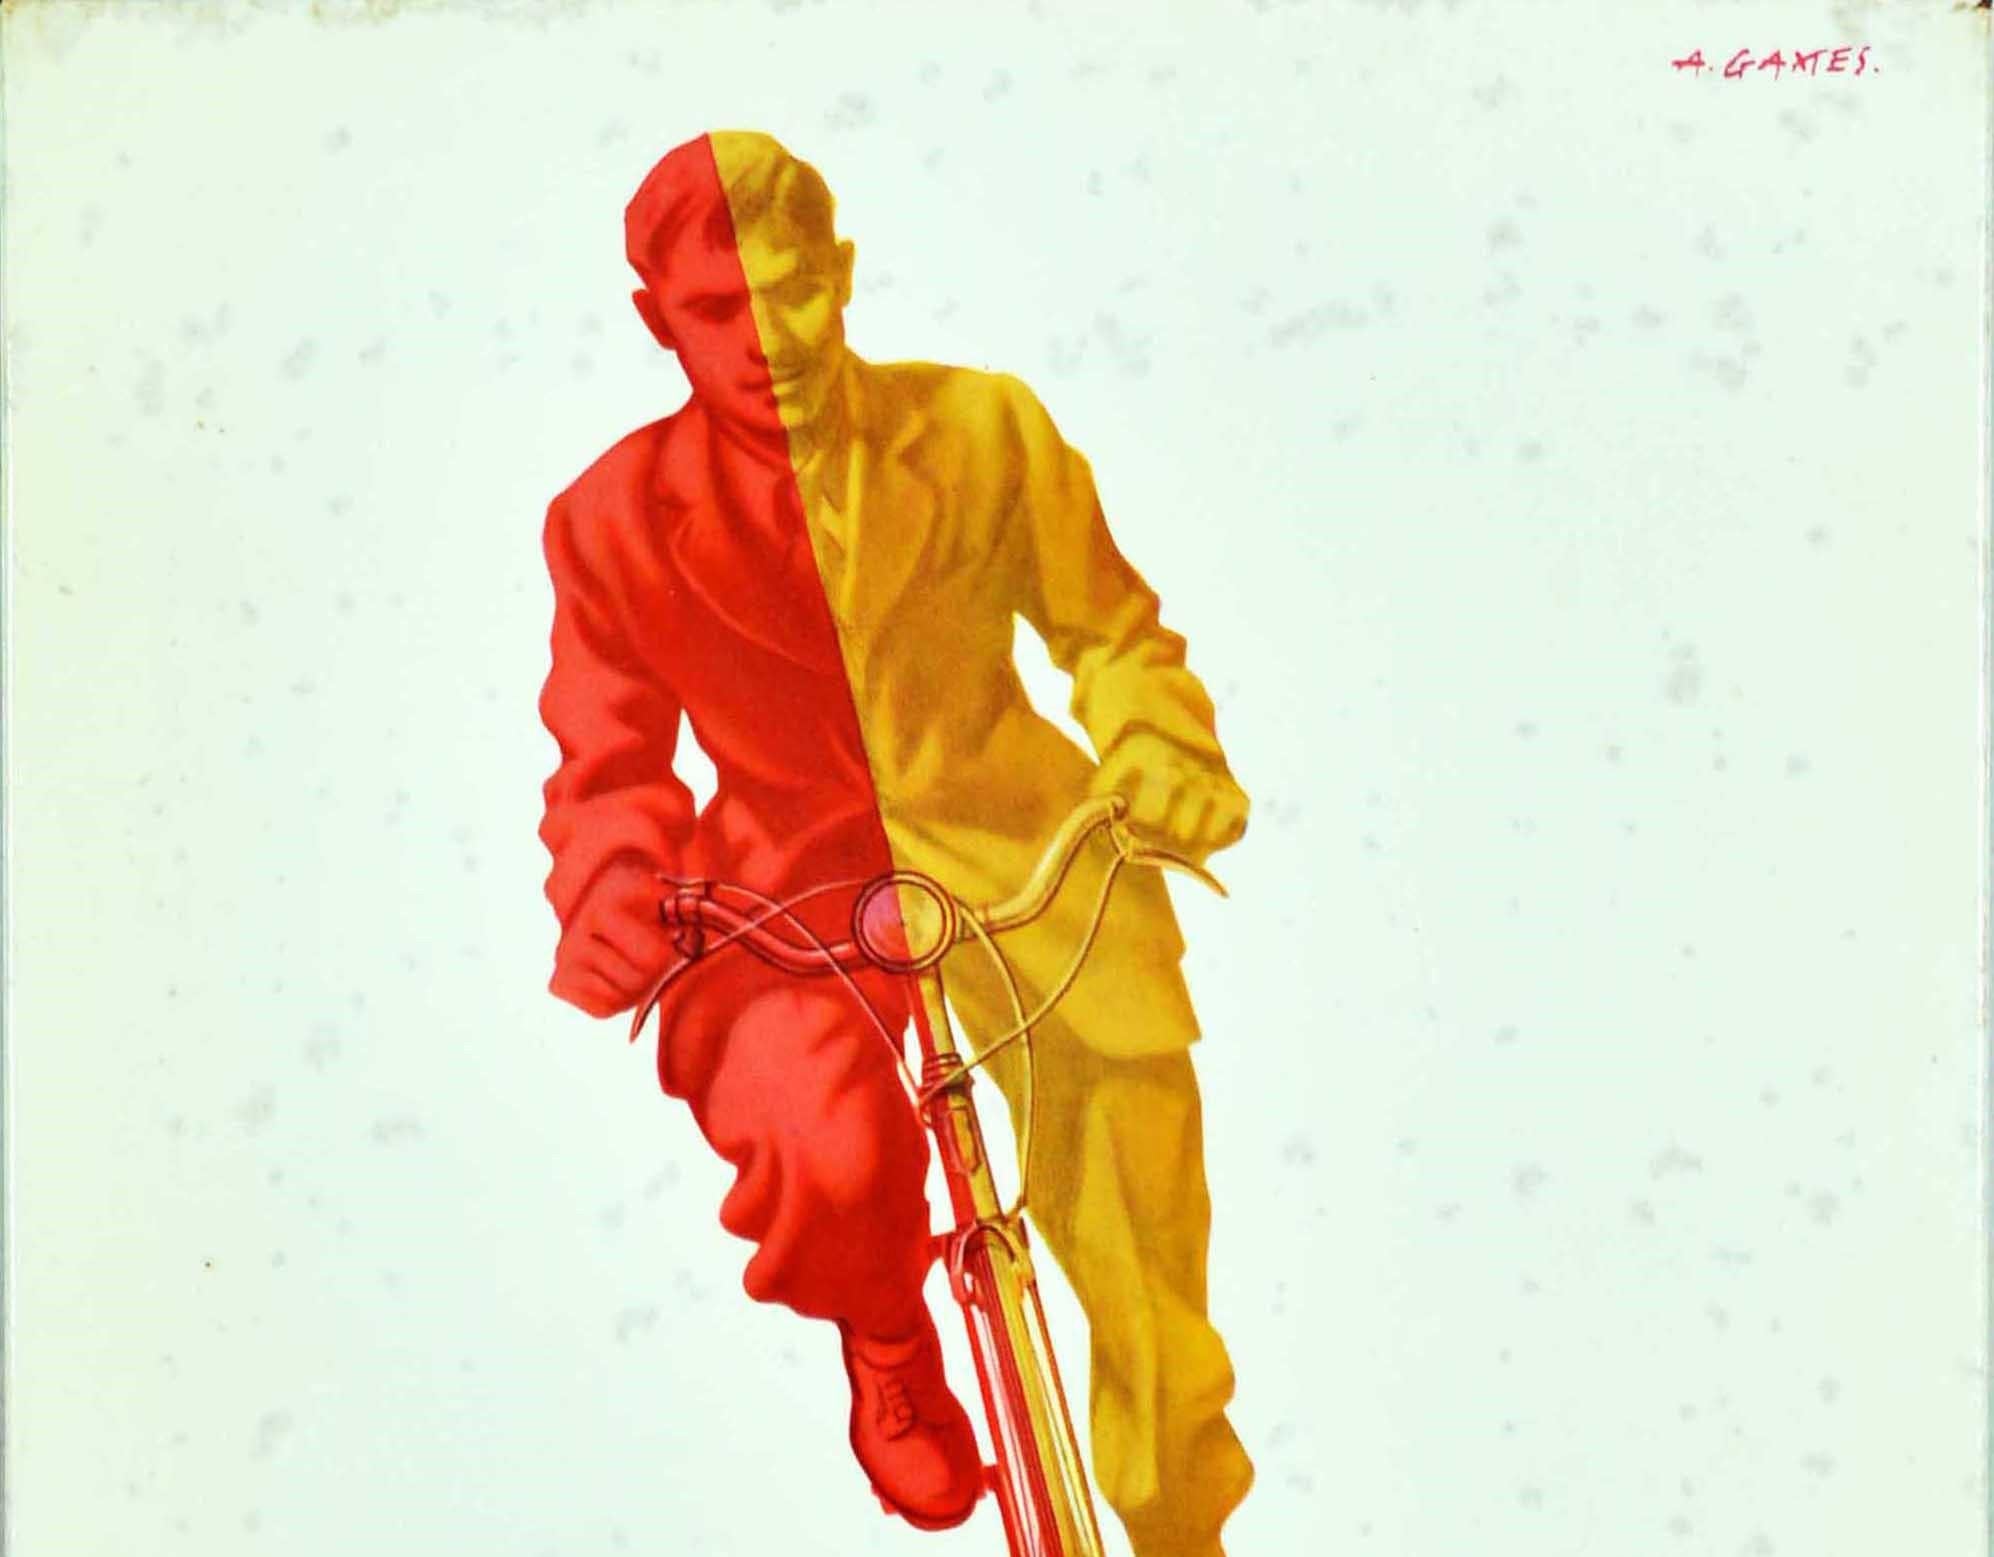 Affiche publicitaire originale de bureau vintage pour la chaîne cycliste de Coventry, avec un superbe design du célèbre graphiste britannique Abram Games (Abraham Gamse ; 1914-1996) représentant un cycliste portant un costume et une cravate de